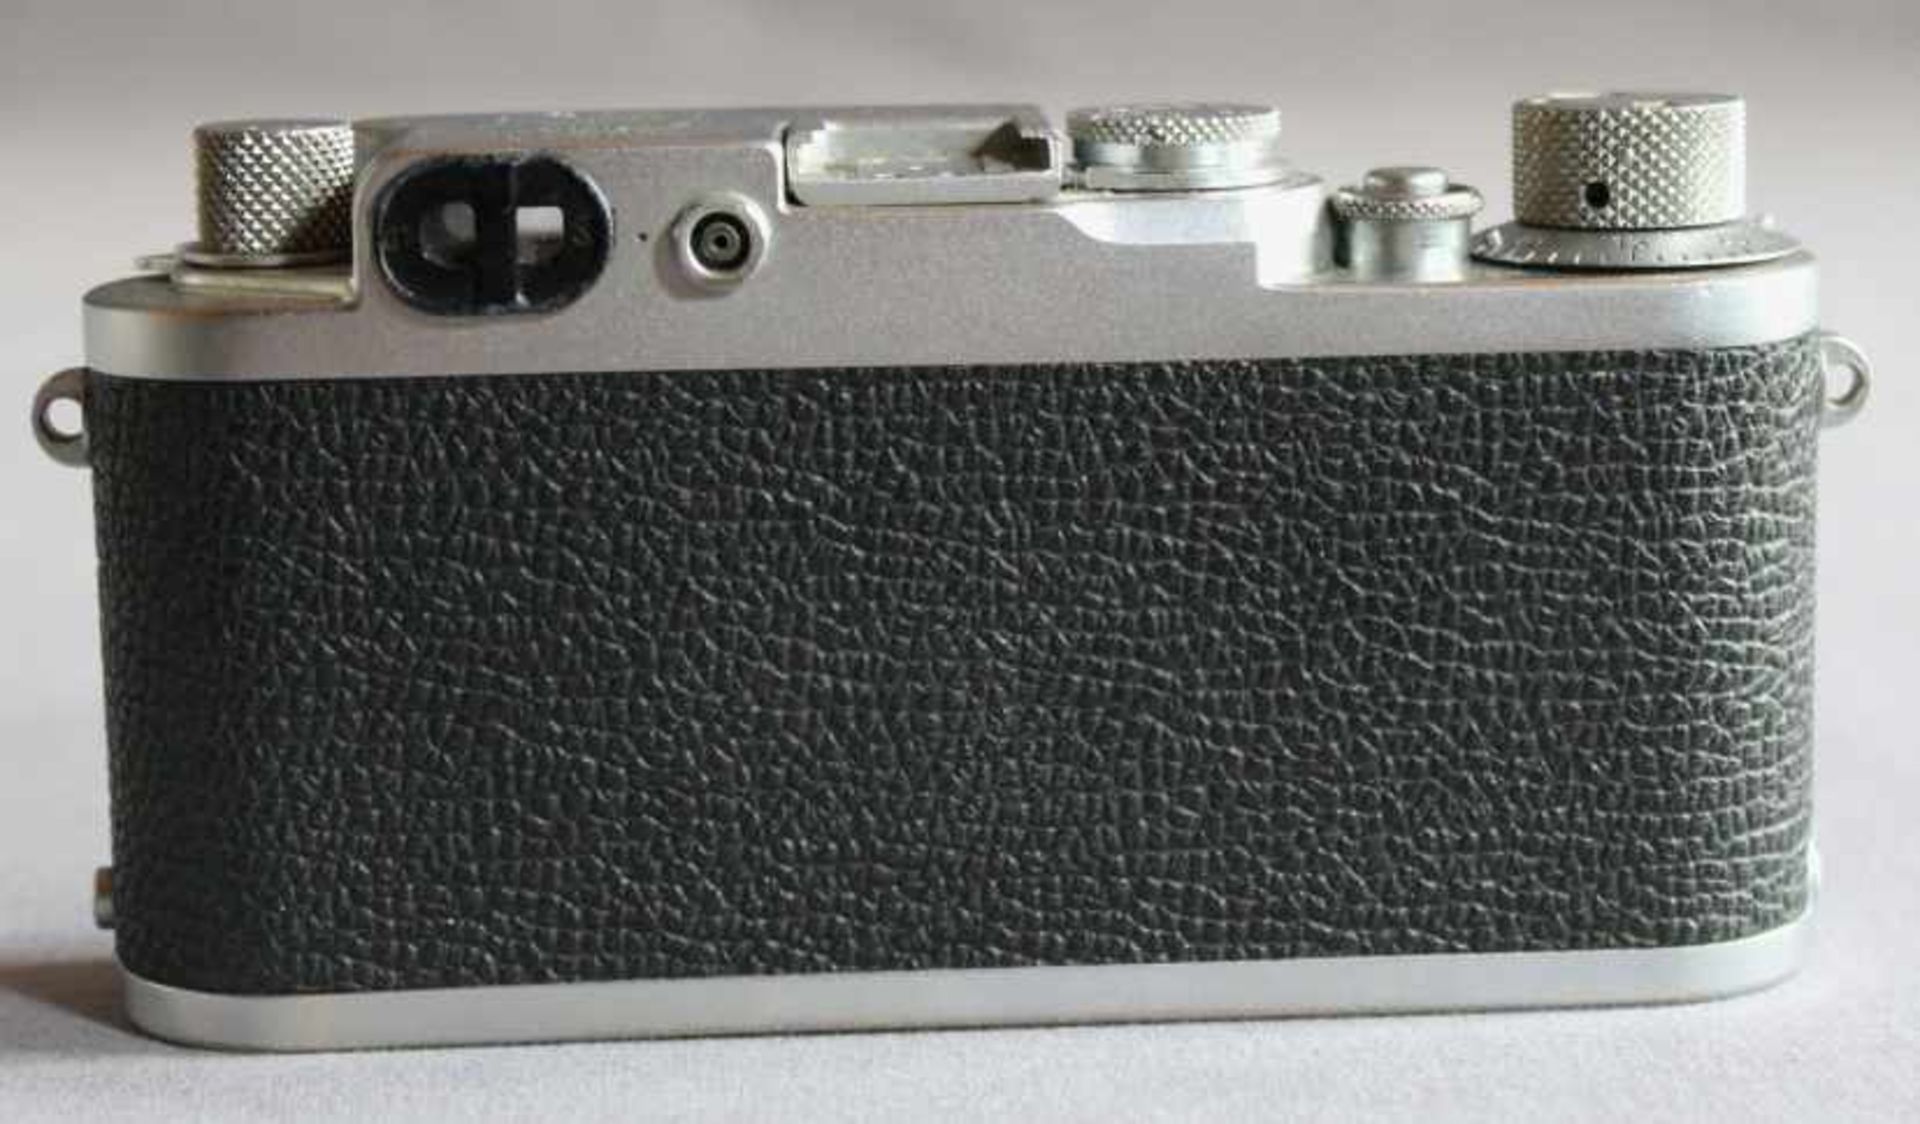 1 Kamera-Body ohne Bereitschaftstasche "Leica, DBP Ernst Leitz GmbH", Modell IIIf (Baujahr 1950- - Bild 2 aus 4